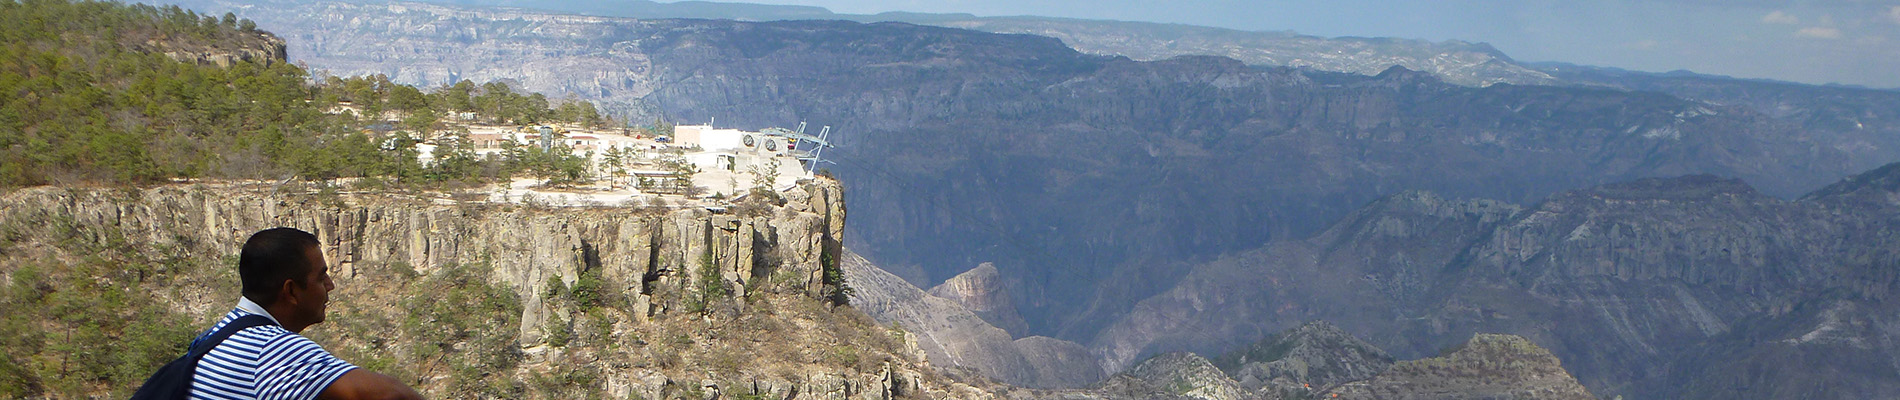 Copper Canyon Discover Mexico Header